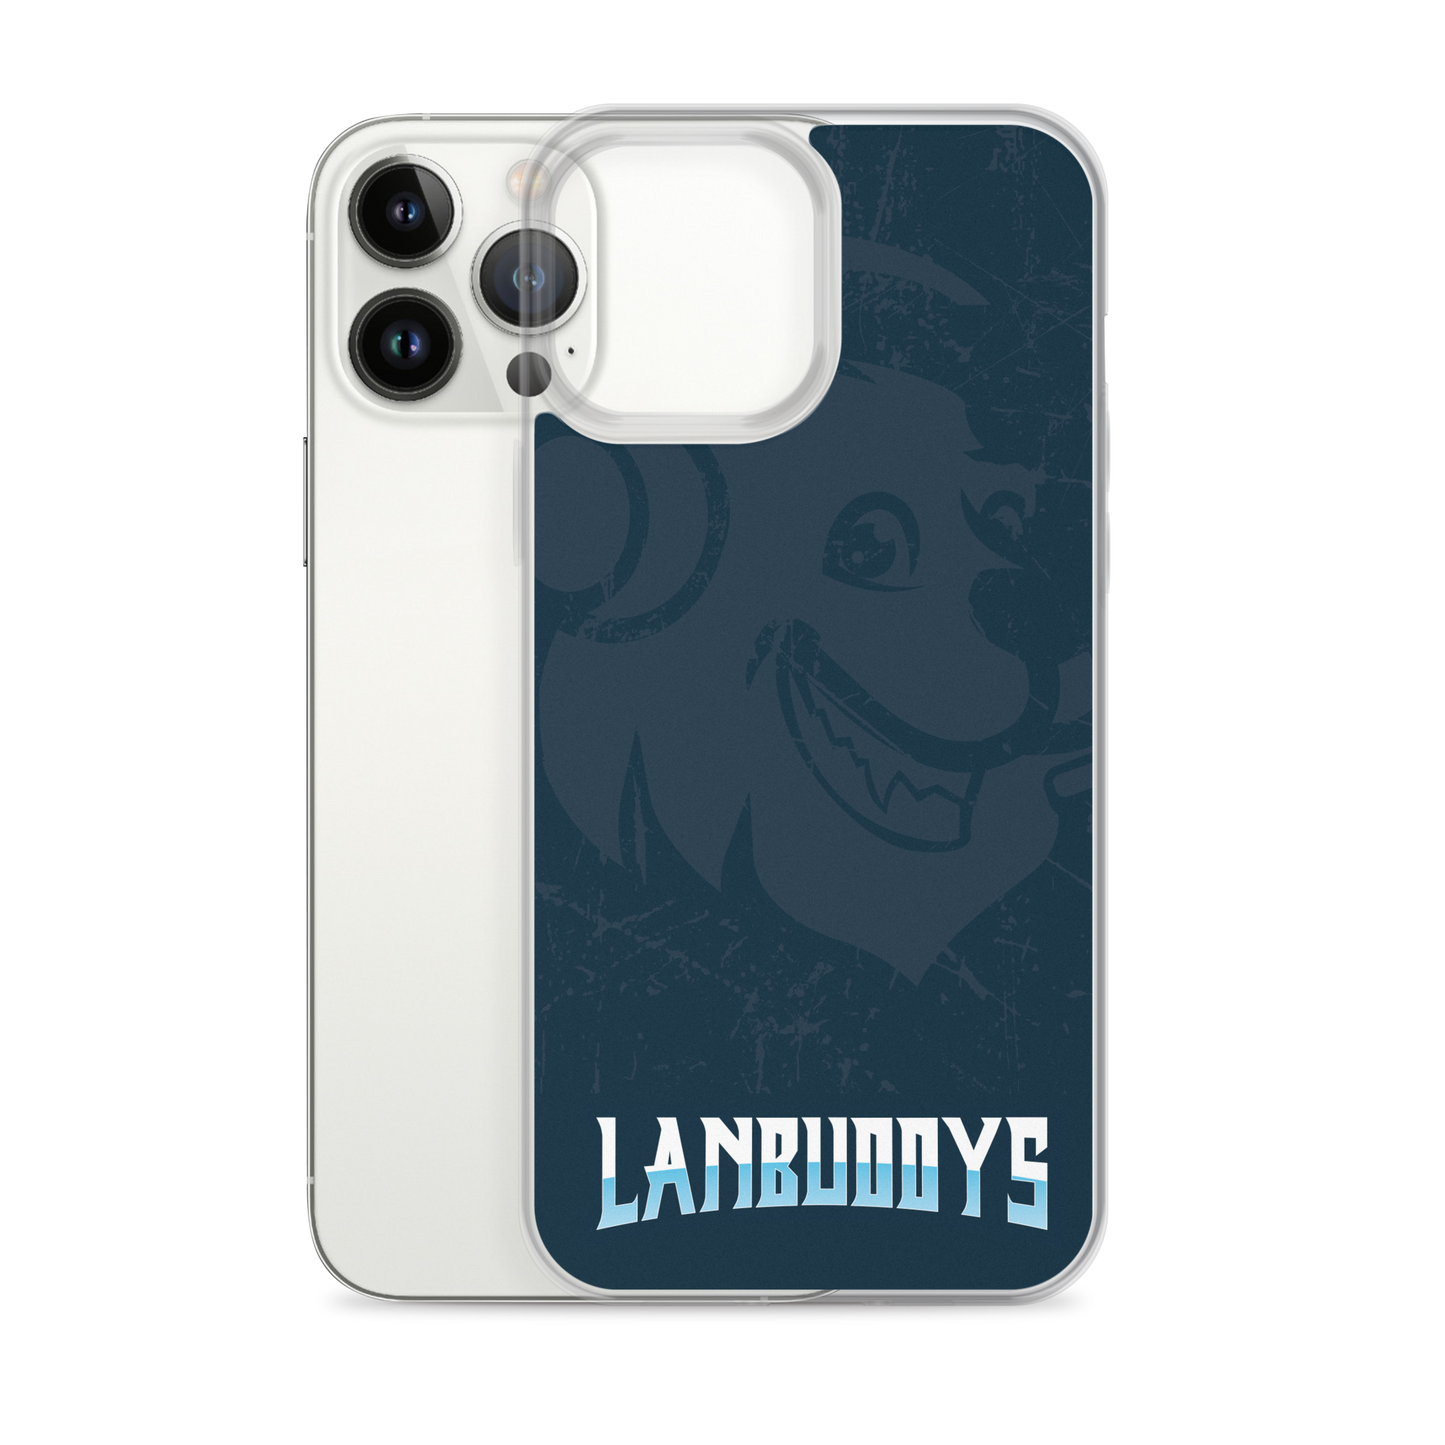 LANBUDDYS - iPhone® Handyhülle